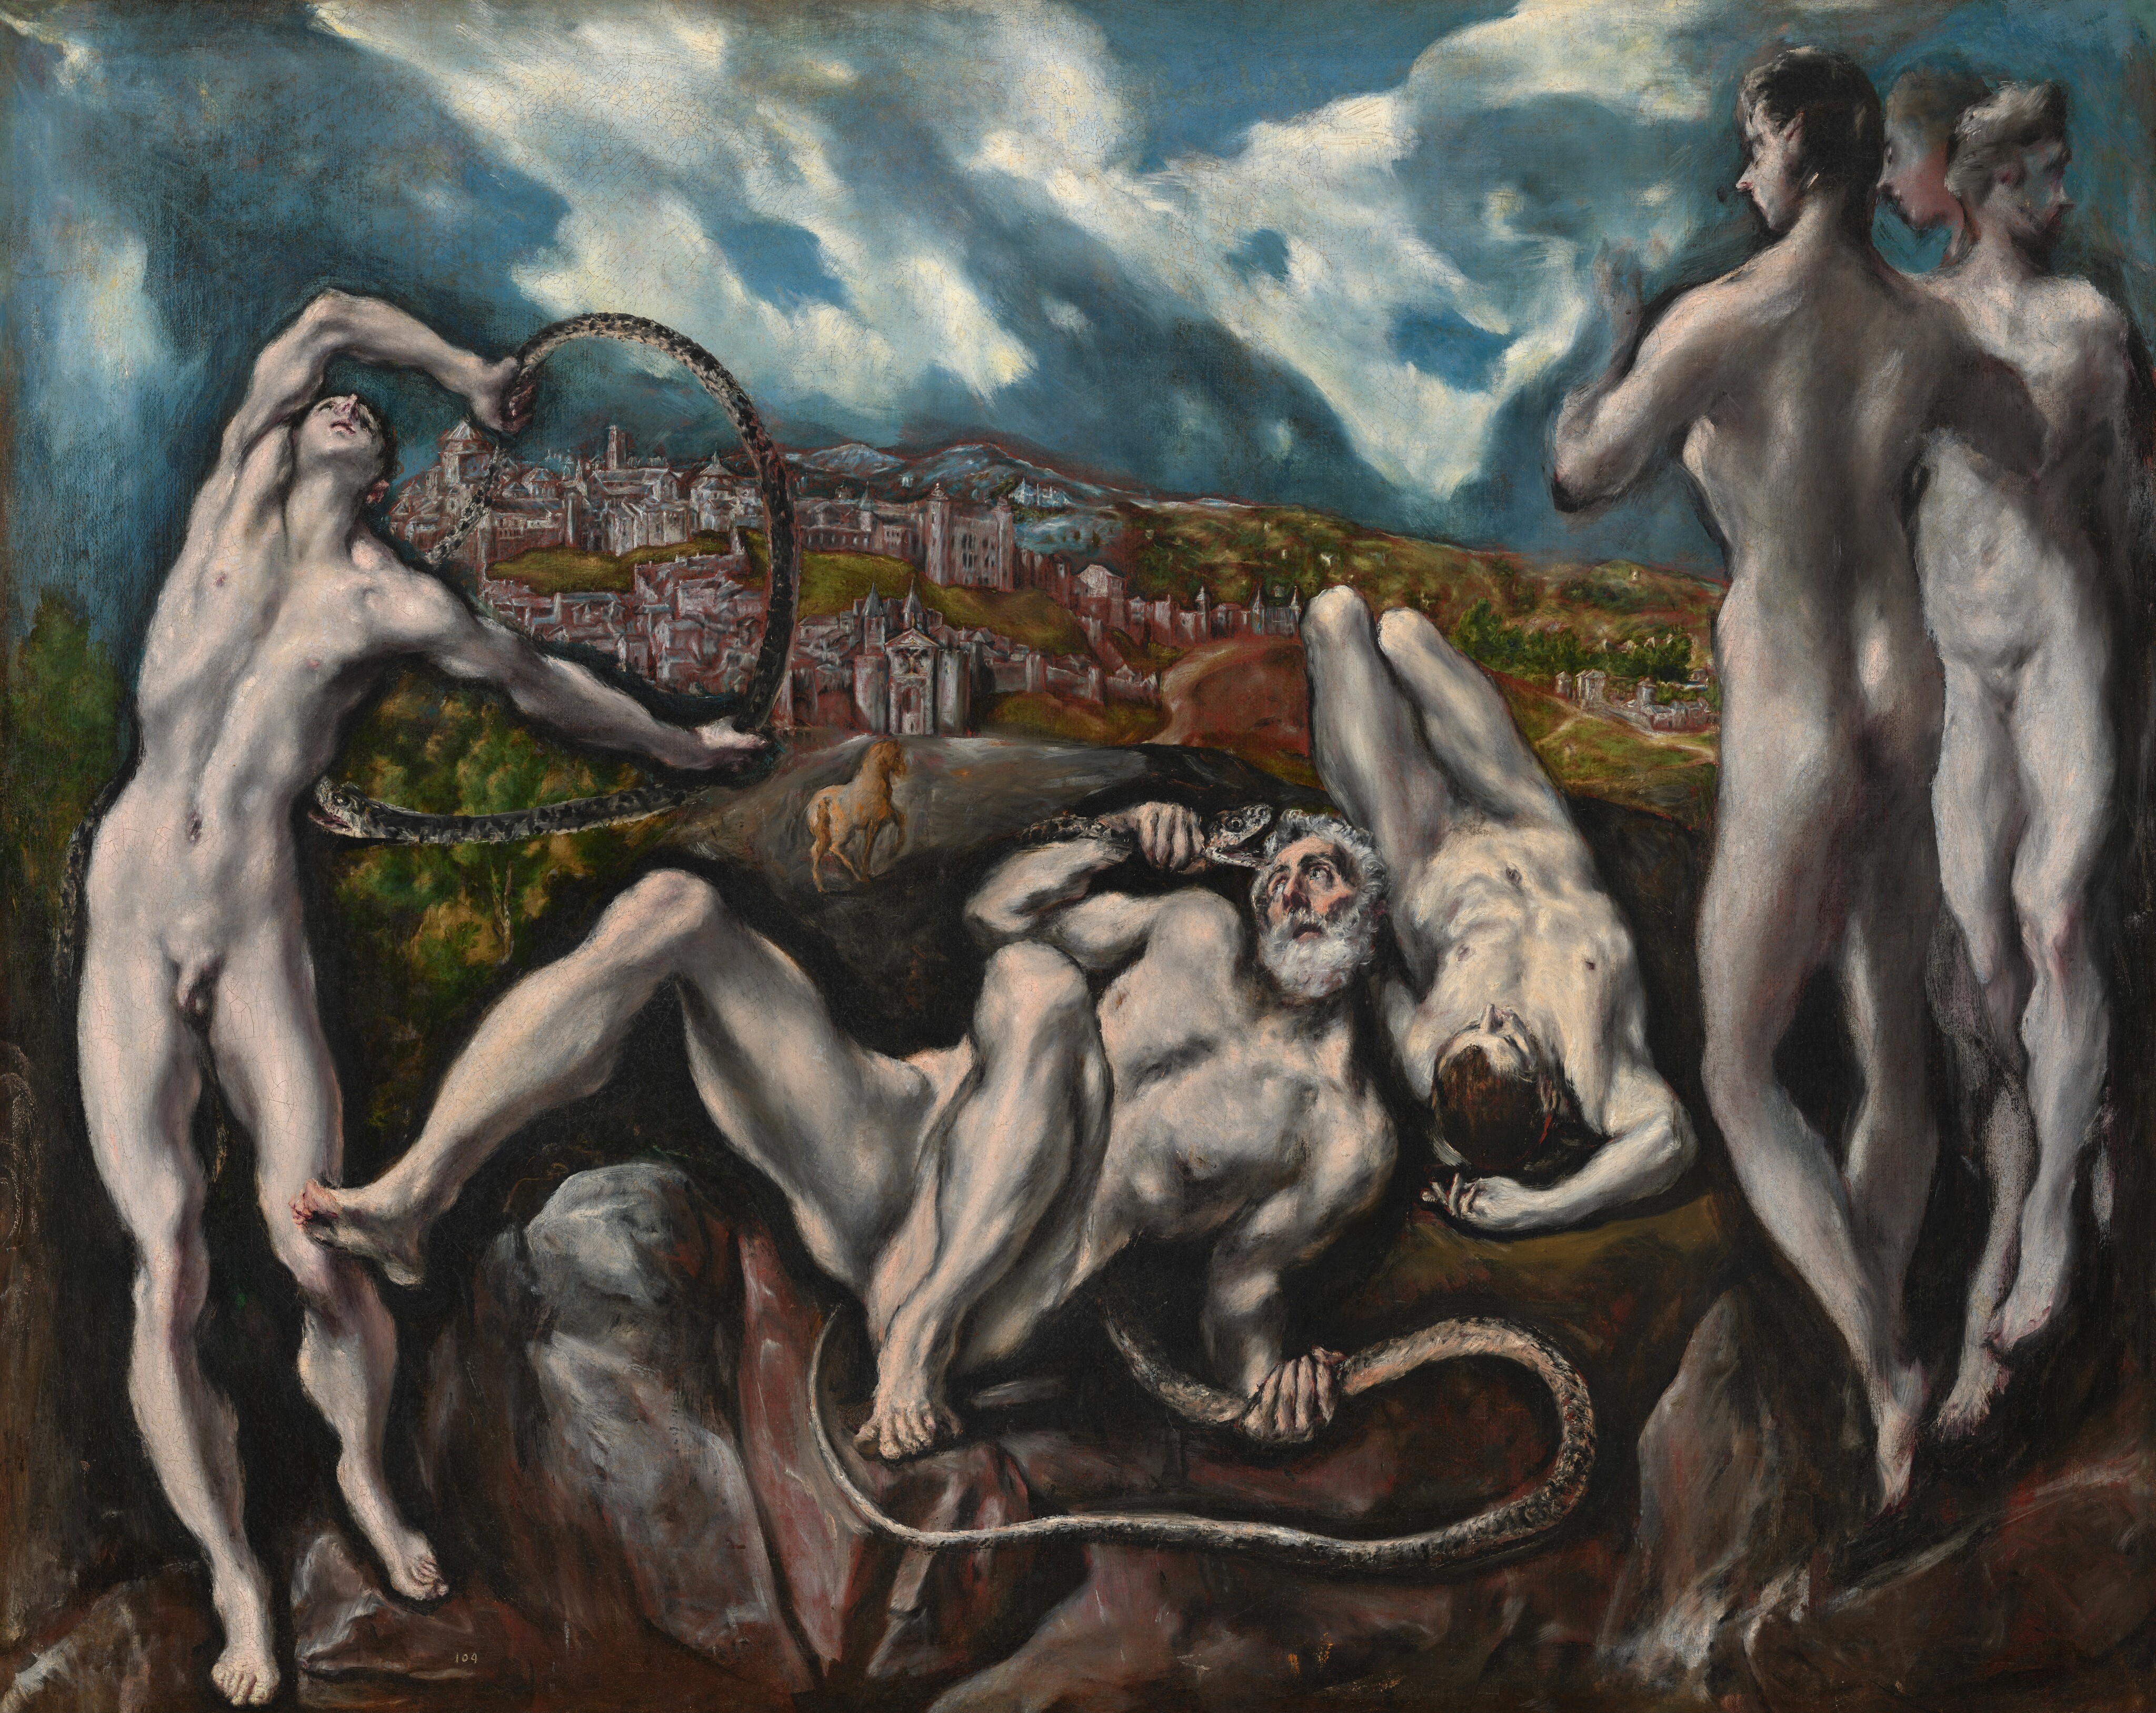 Laocoön (El Greco, c. 1610/1614)